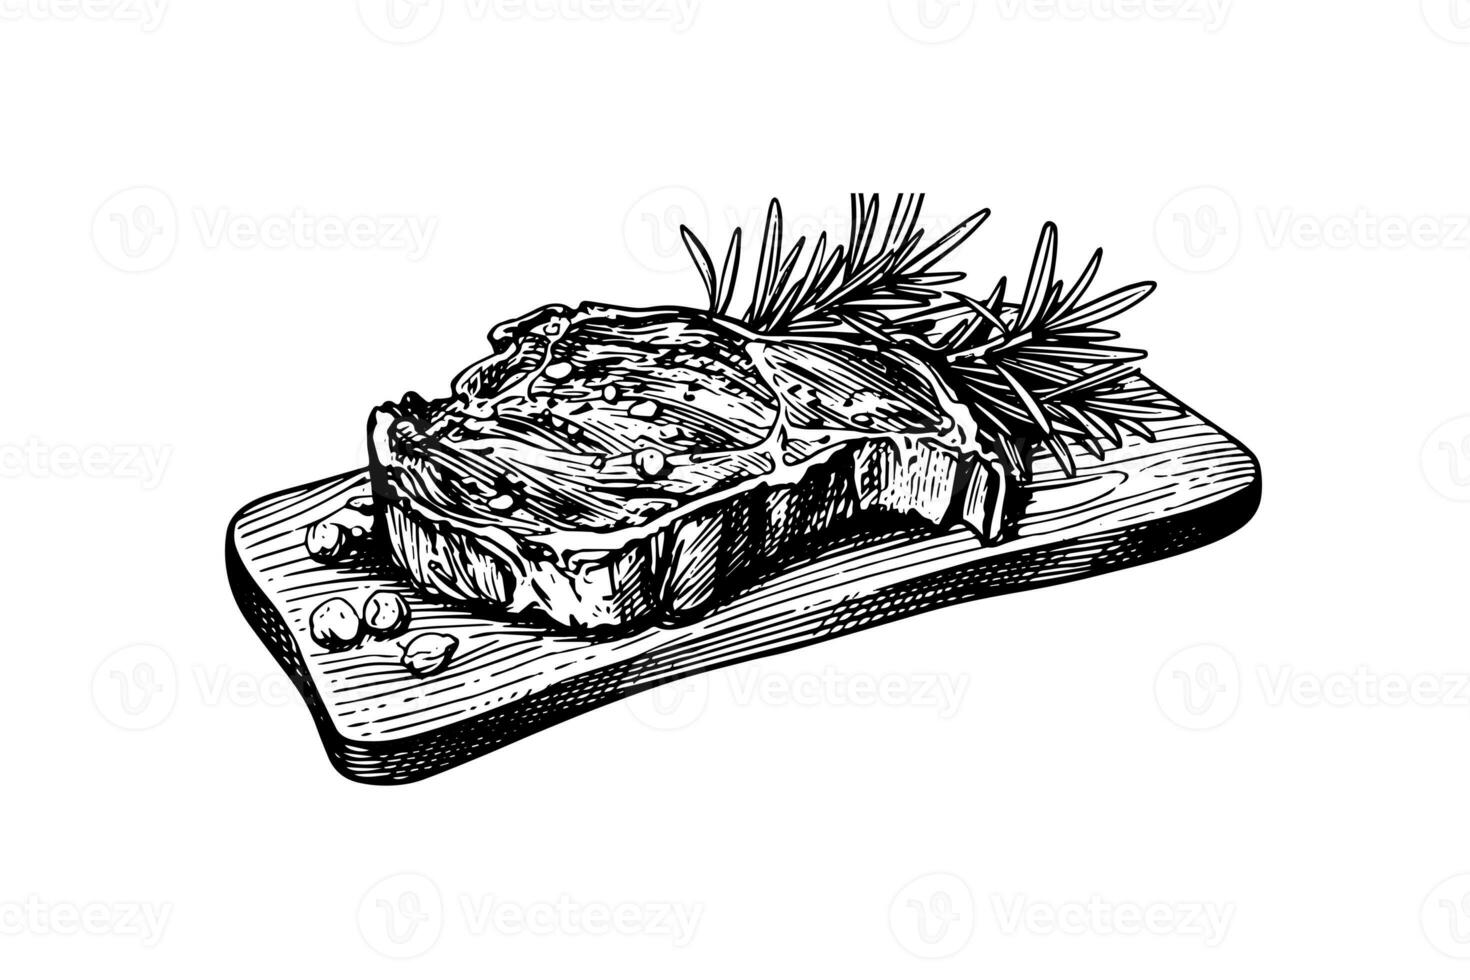 carne bistecca su legna tavola. mano disegno schizzo incisione stile vettore illustrazione foto